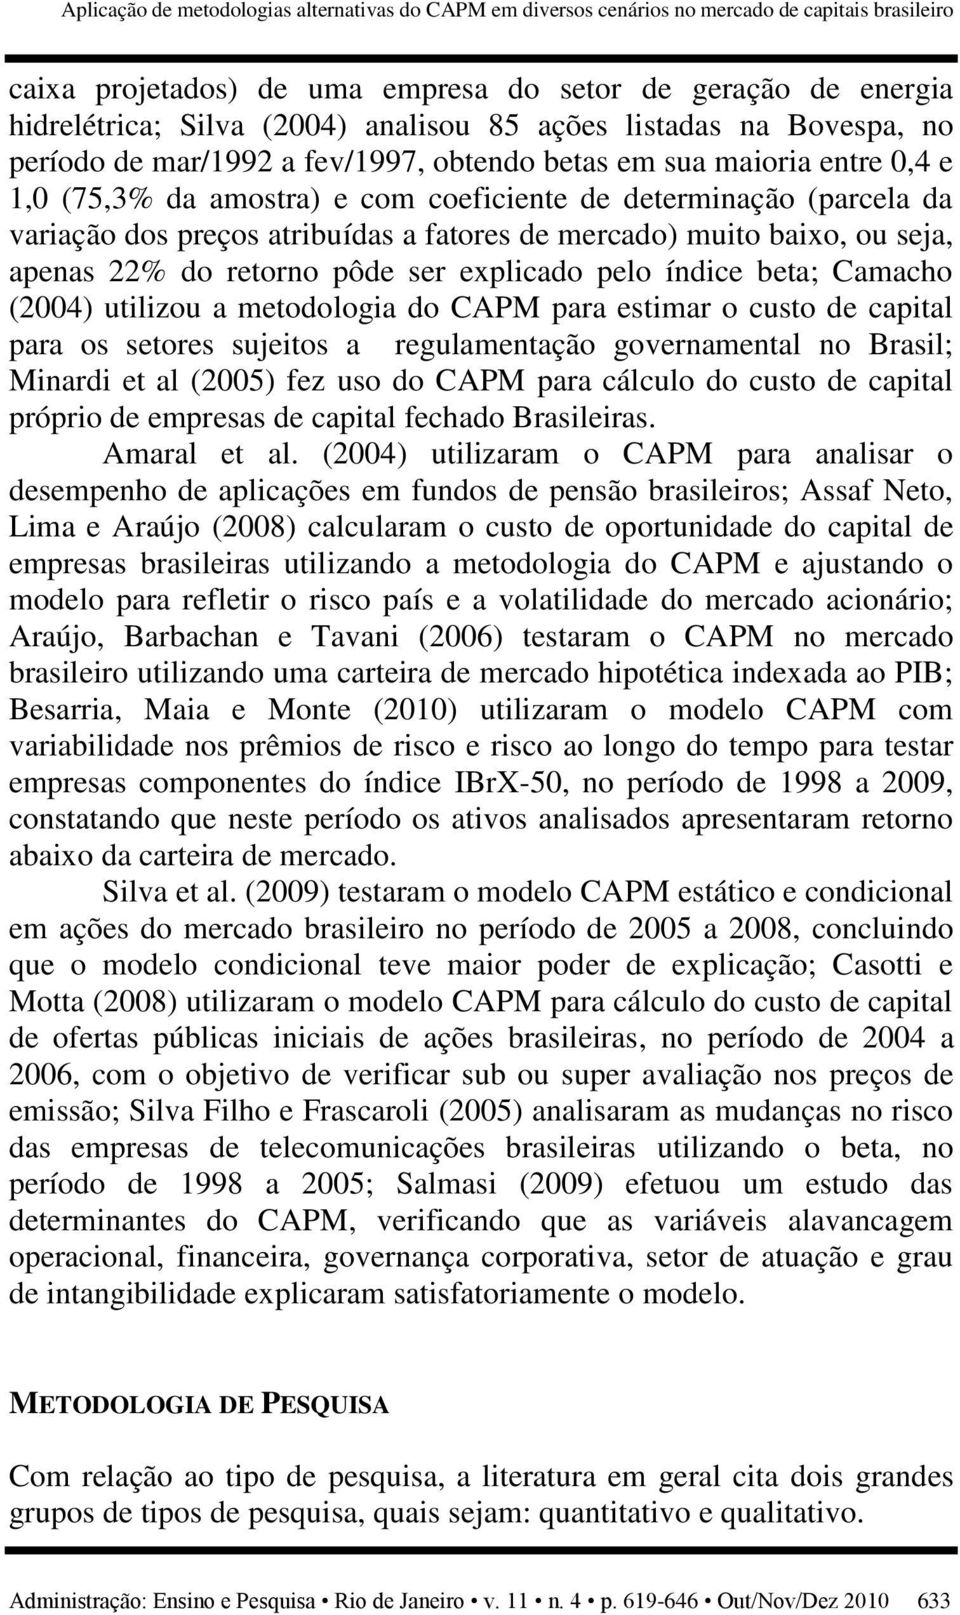 preços atribuídas a fatores de mercado) muito baixo, ou seja, apenas 22% do retorno pôde ser explicado pelo índice beta; Camacho (2004) utilizou a metodologia do CAPM para estimar o custo de capital